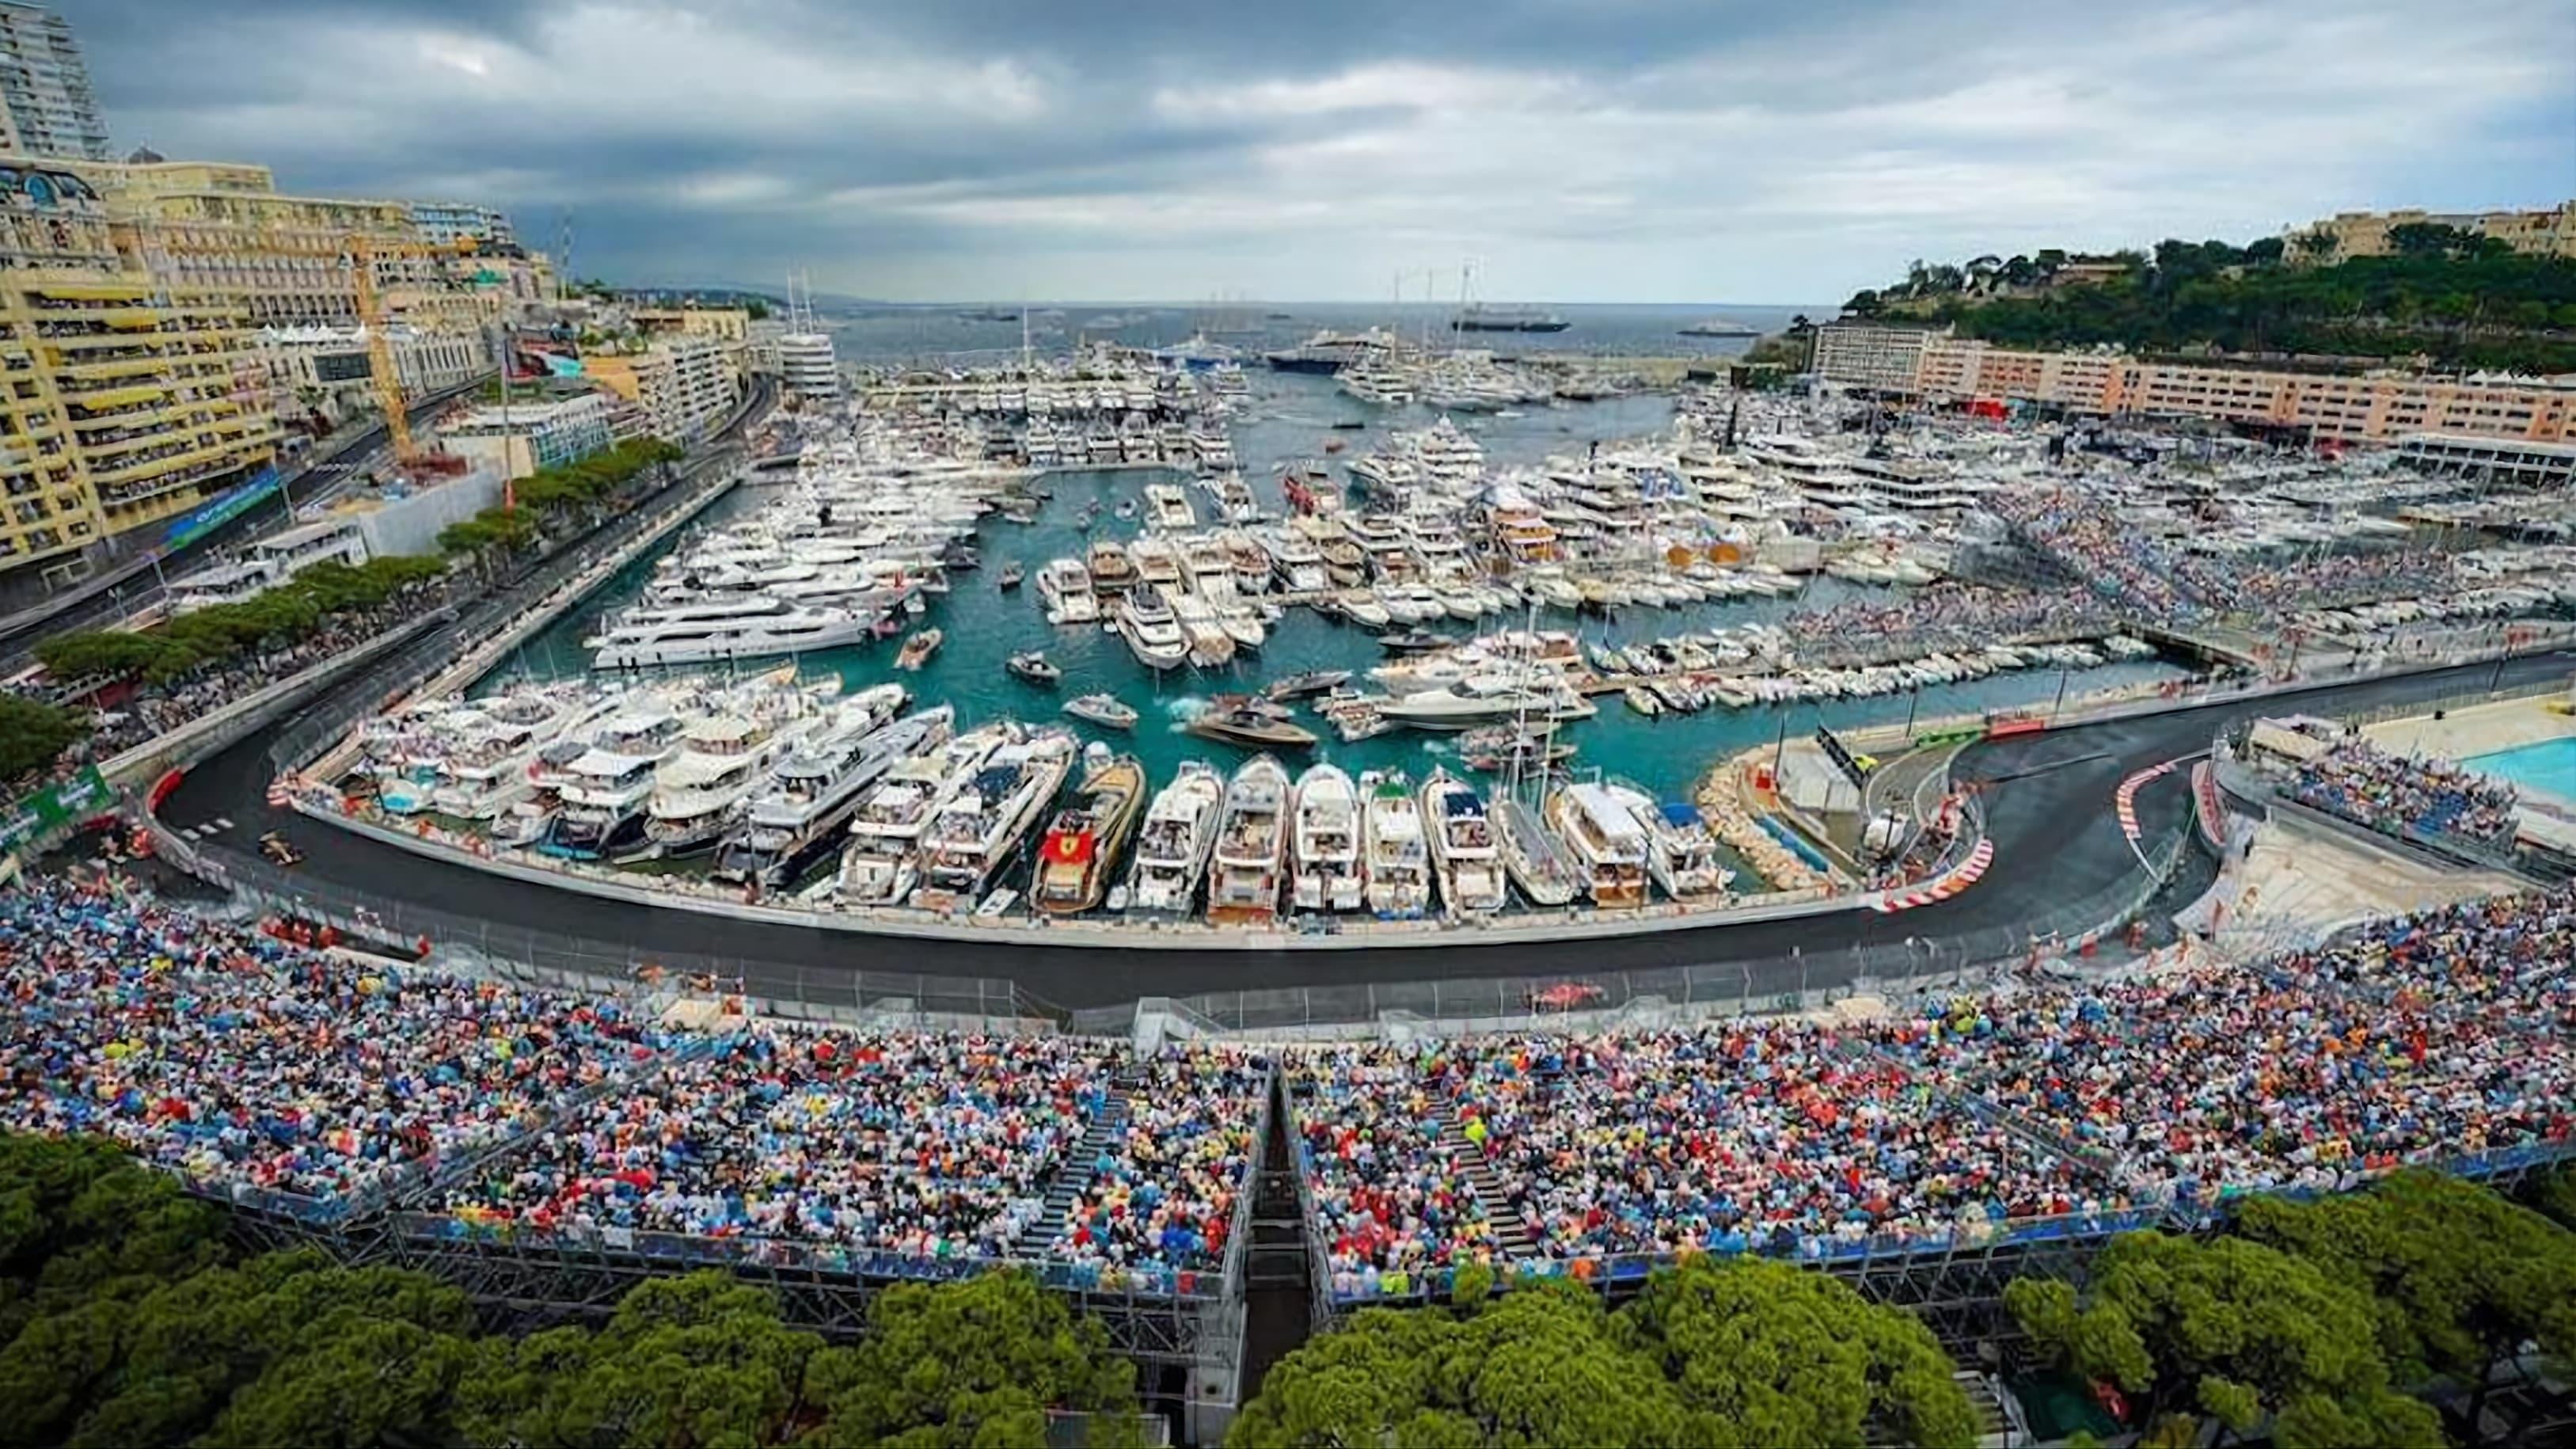 Monaco Grand Prix, The Legend backdrop